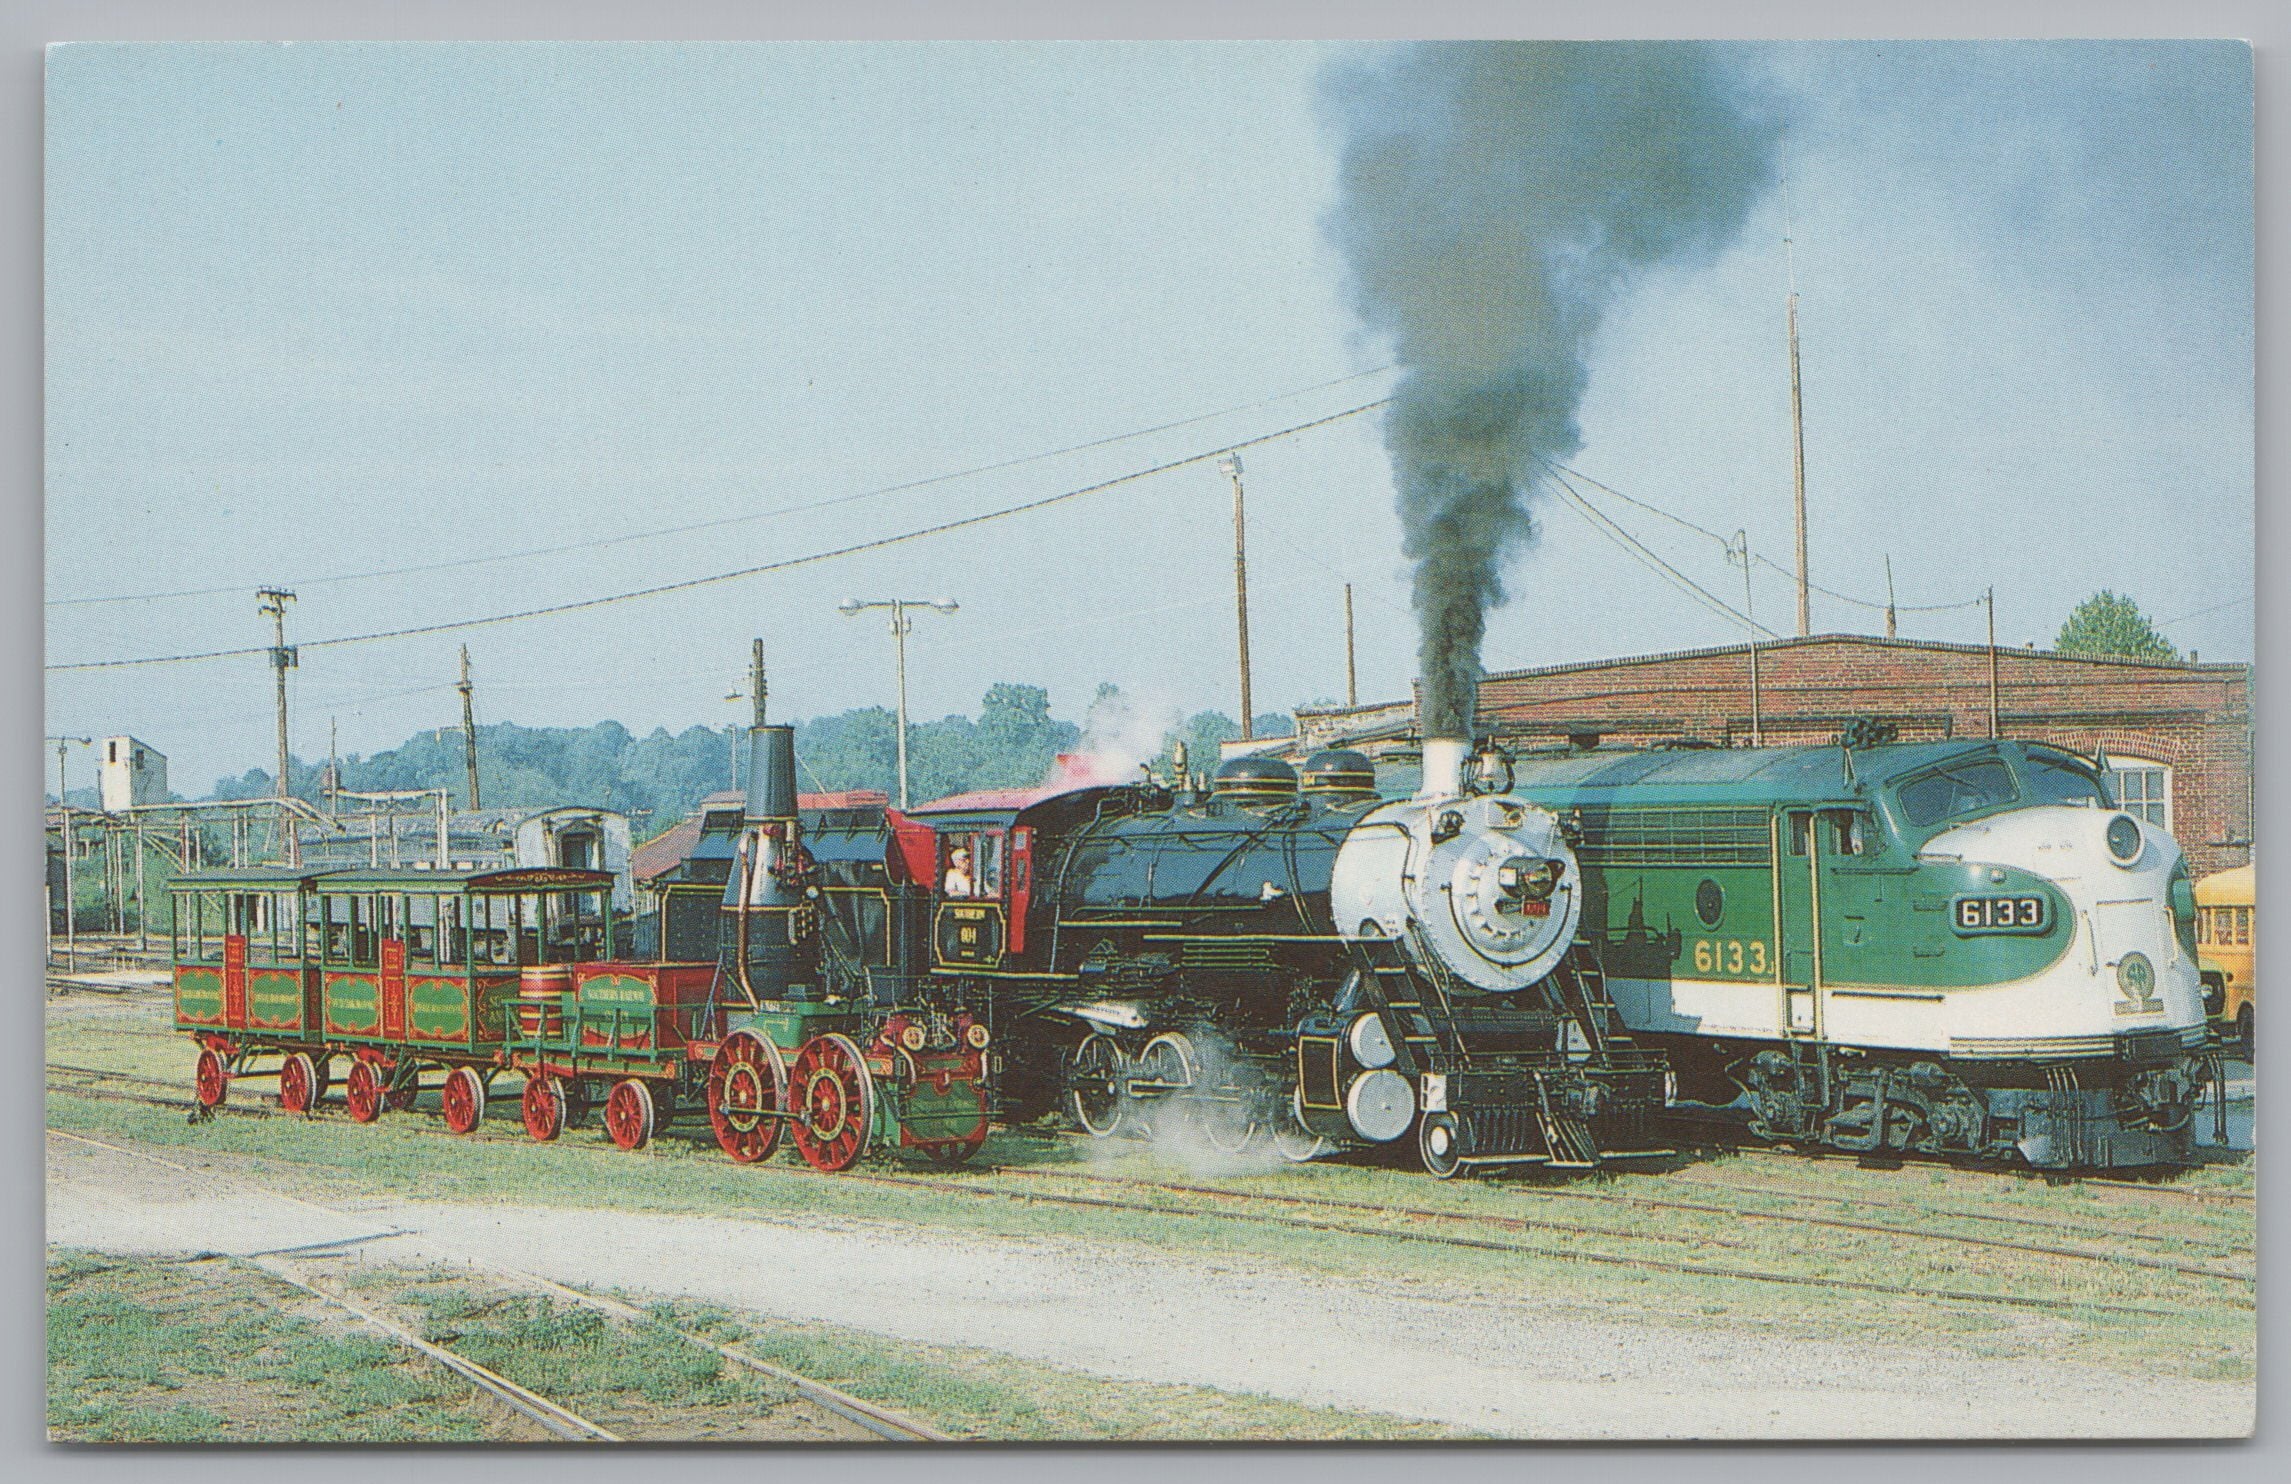 Spencer Shops State Historic Site Lineup Of Locomotives, Vintage Post Card.